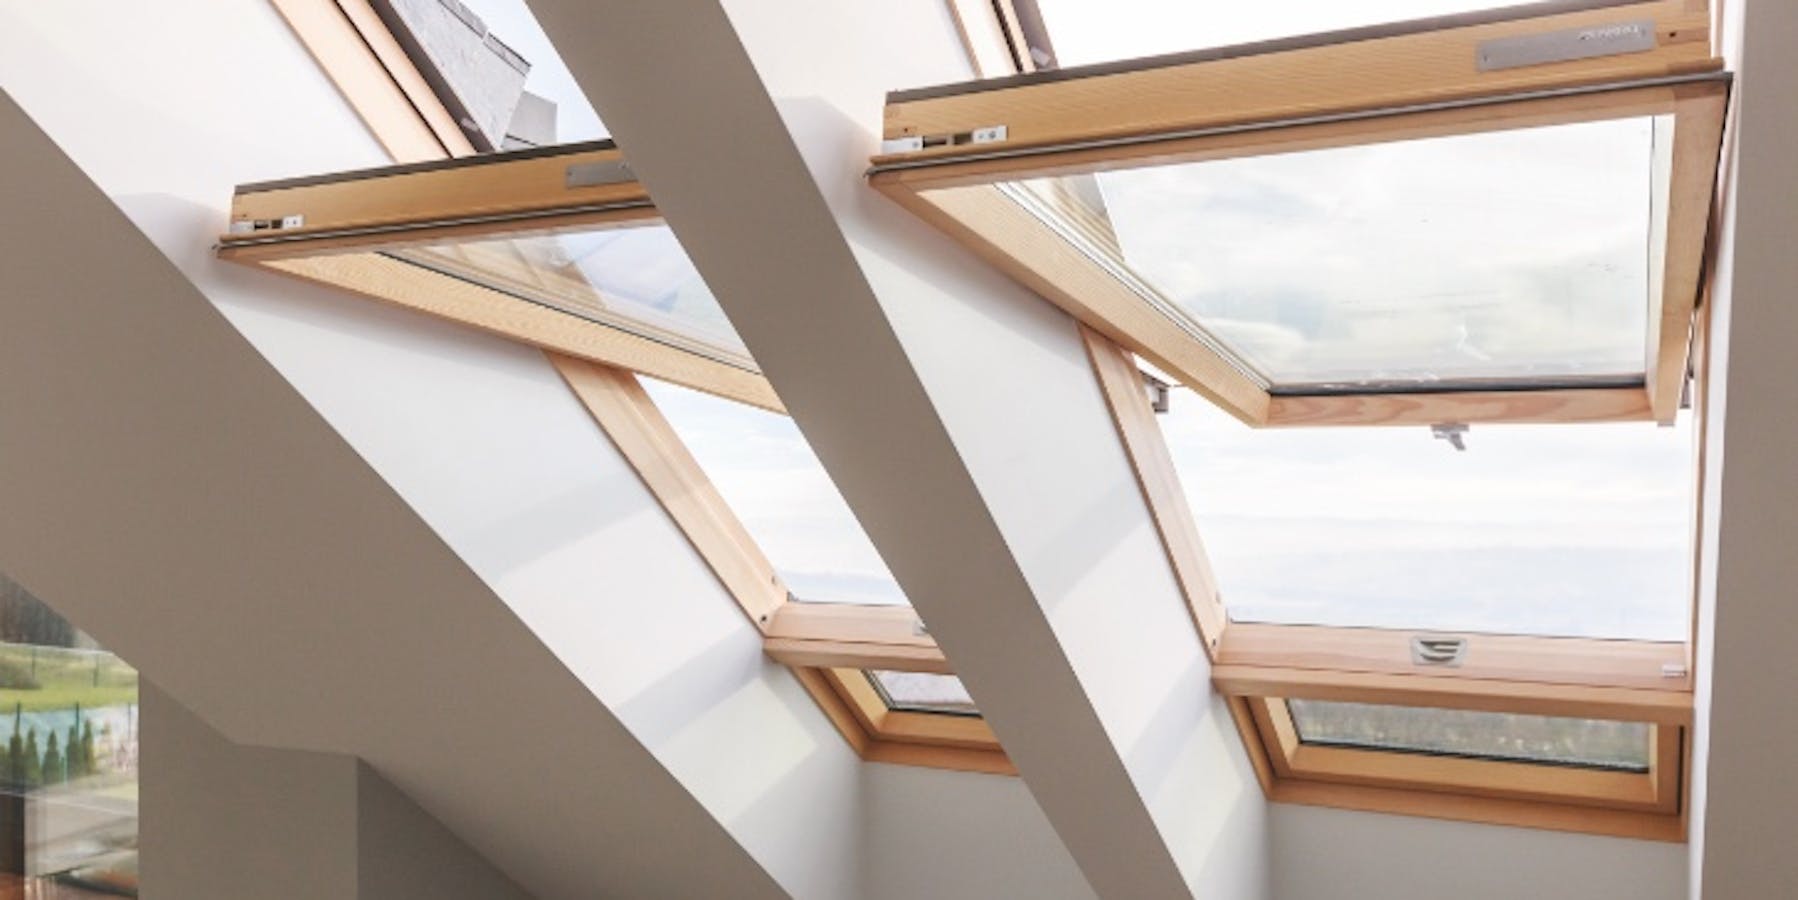 Das Schwingfenster bietet eine unkomplizierte Dachfensterlösung für jeden